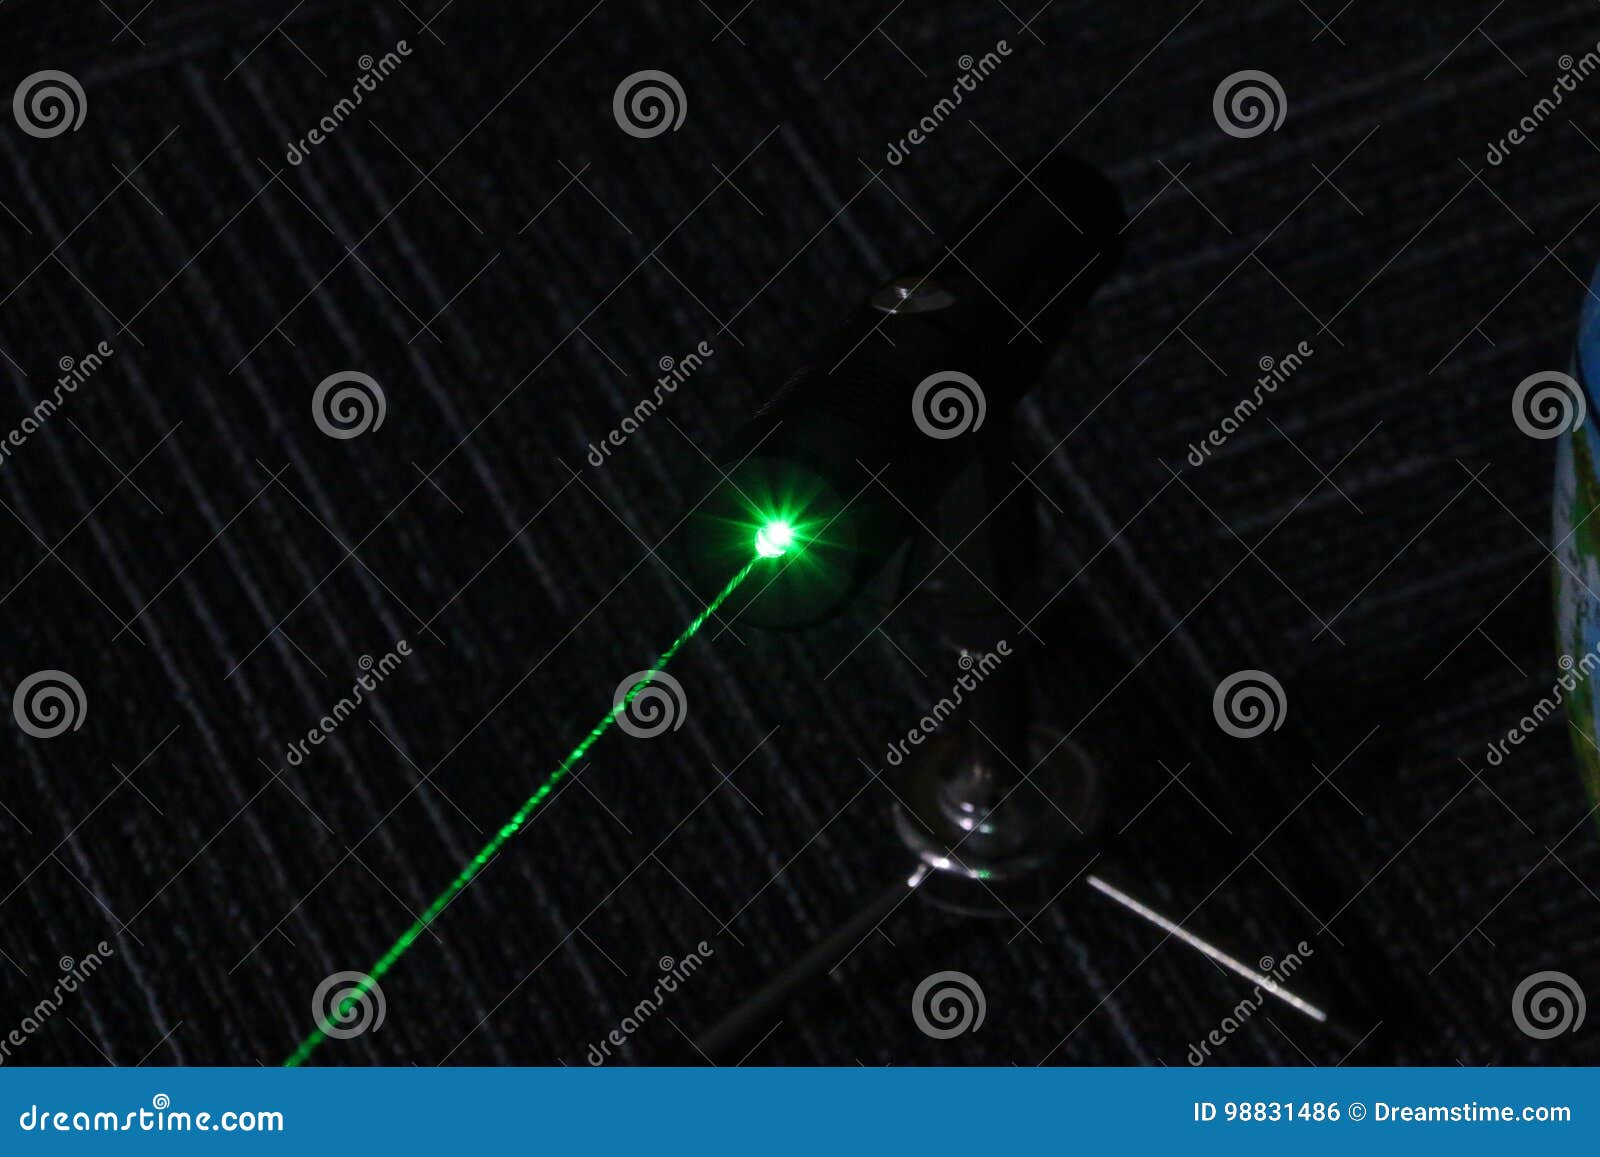 1w powerful green laser pointer